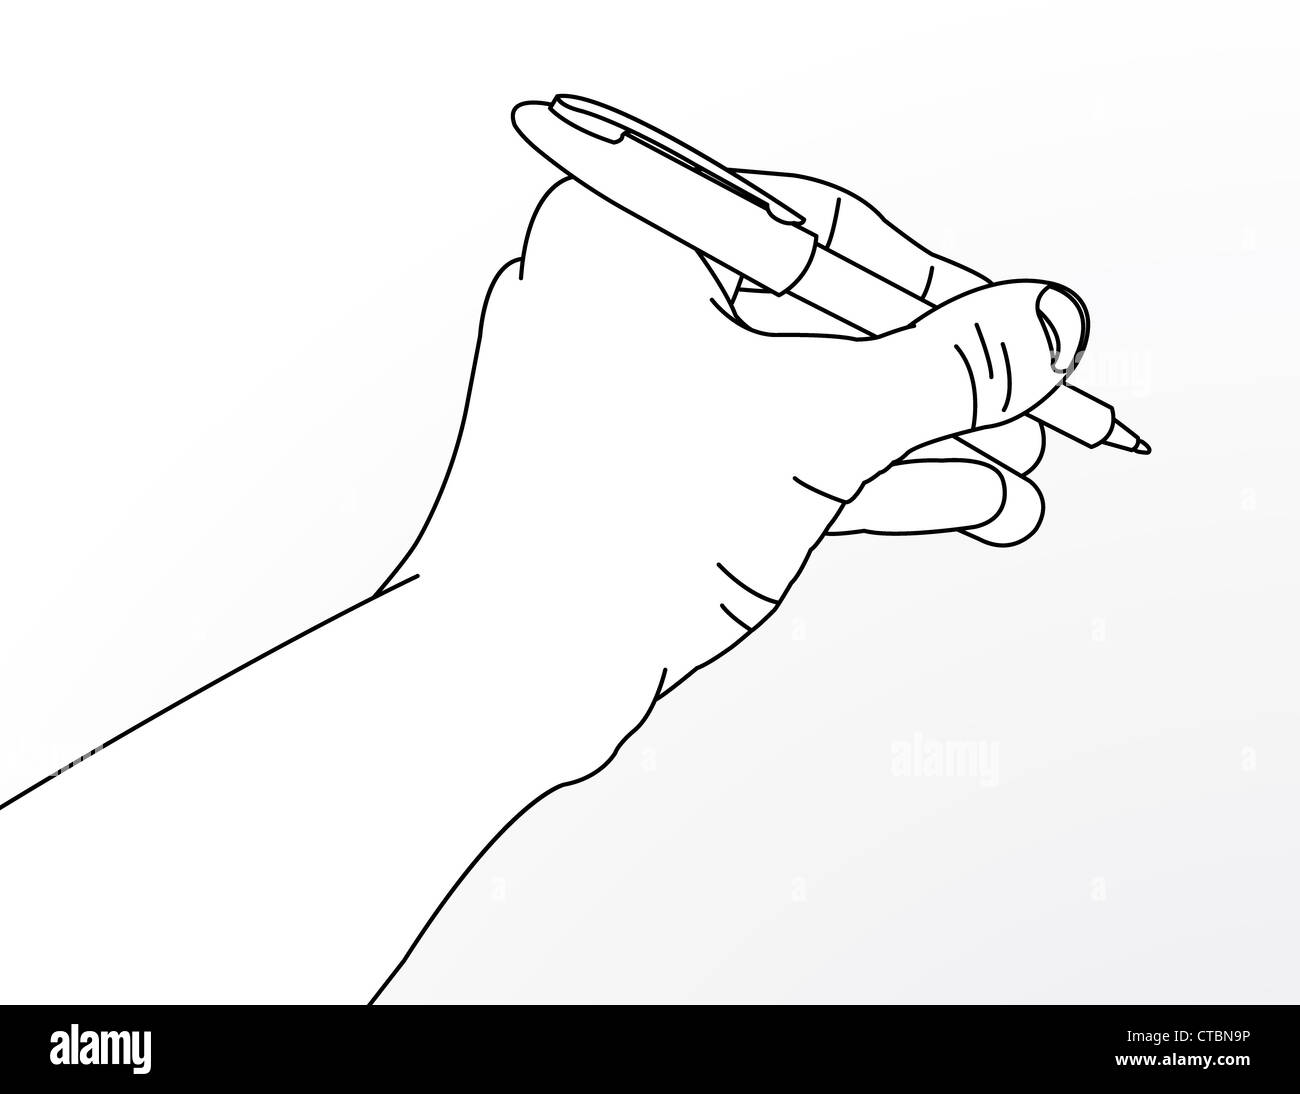 Le dessin des lignes de la main avec un stylo Photo Stock - Alamy